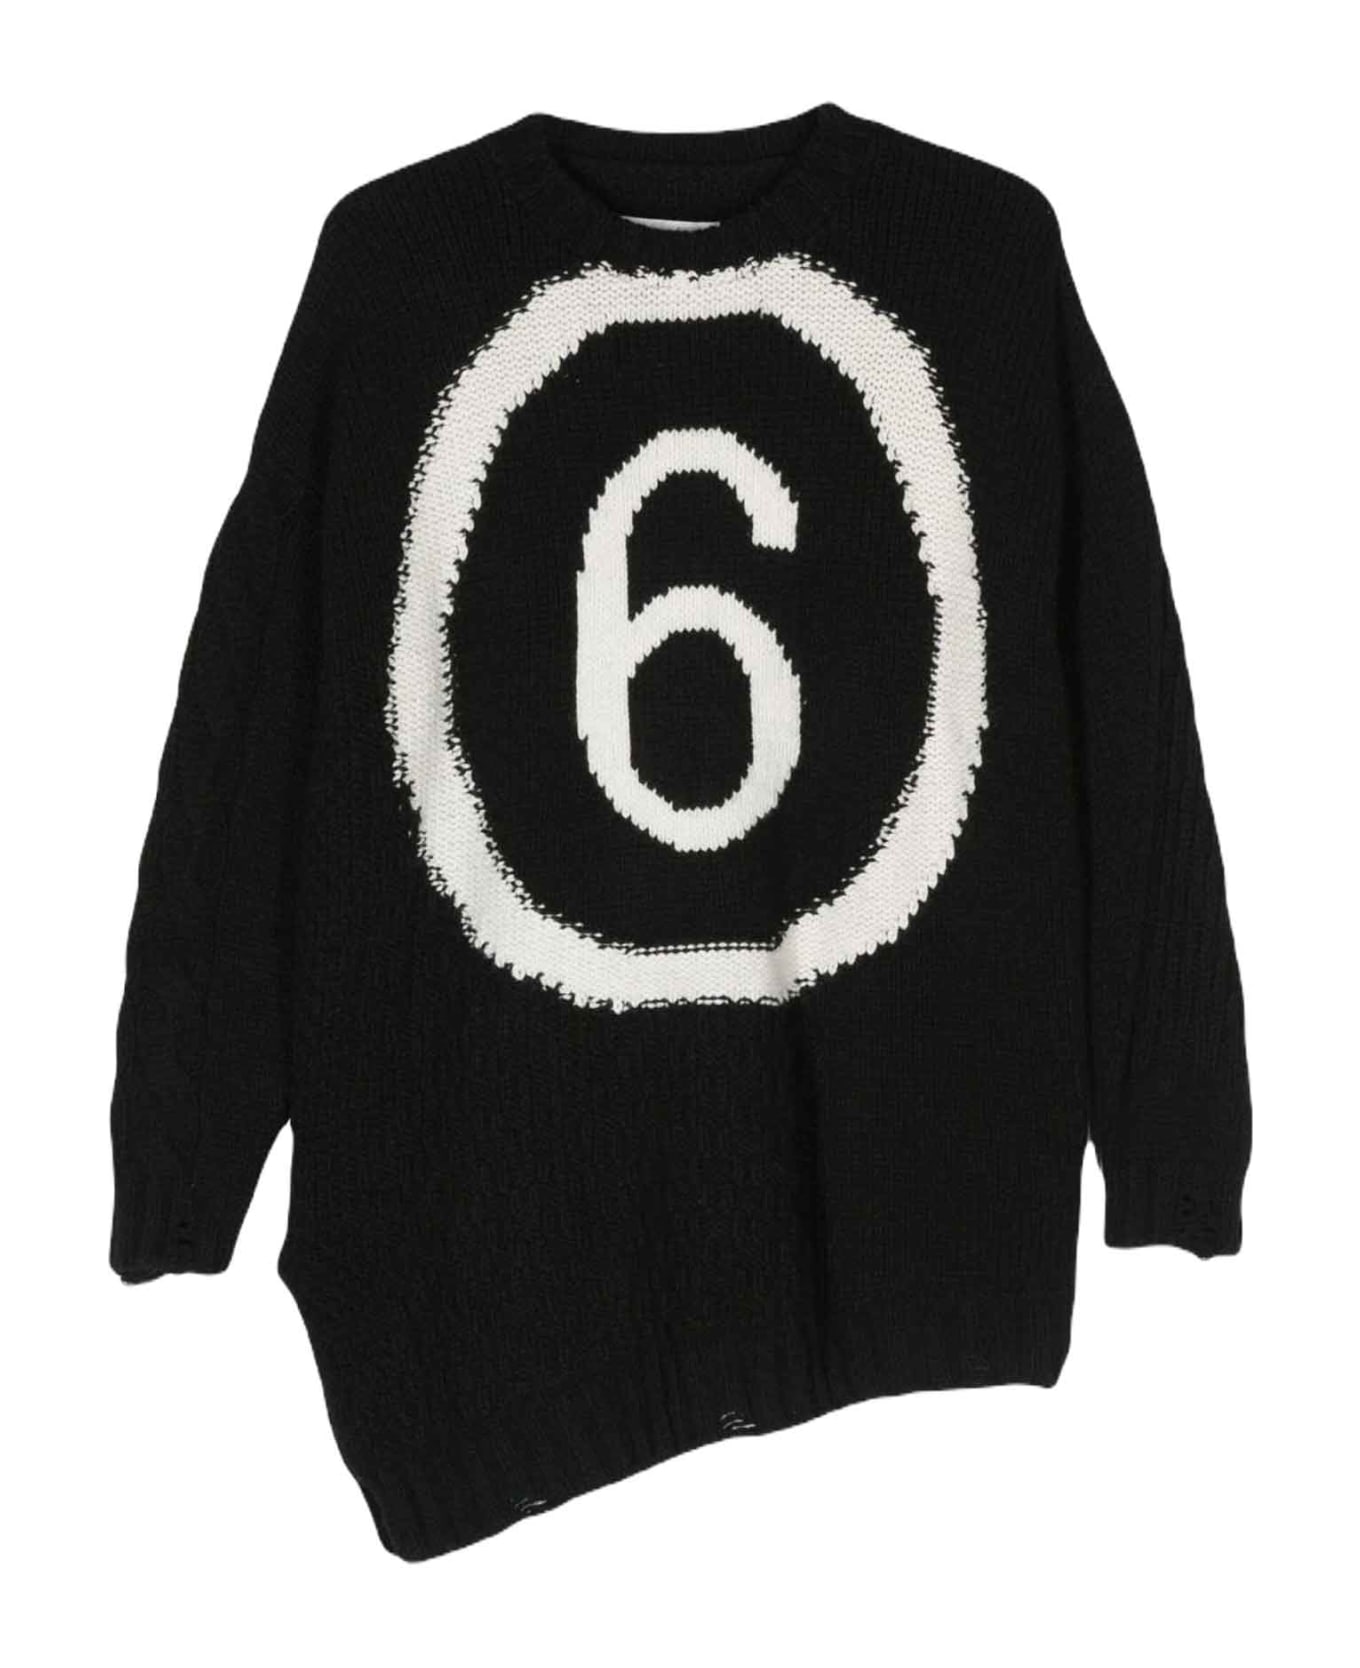 MM6 Maison Margiela Black Sweater Unisex - Nero